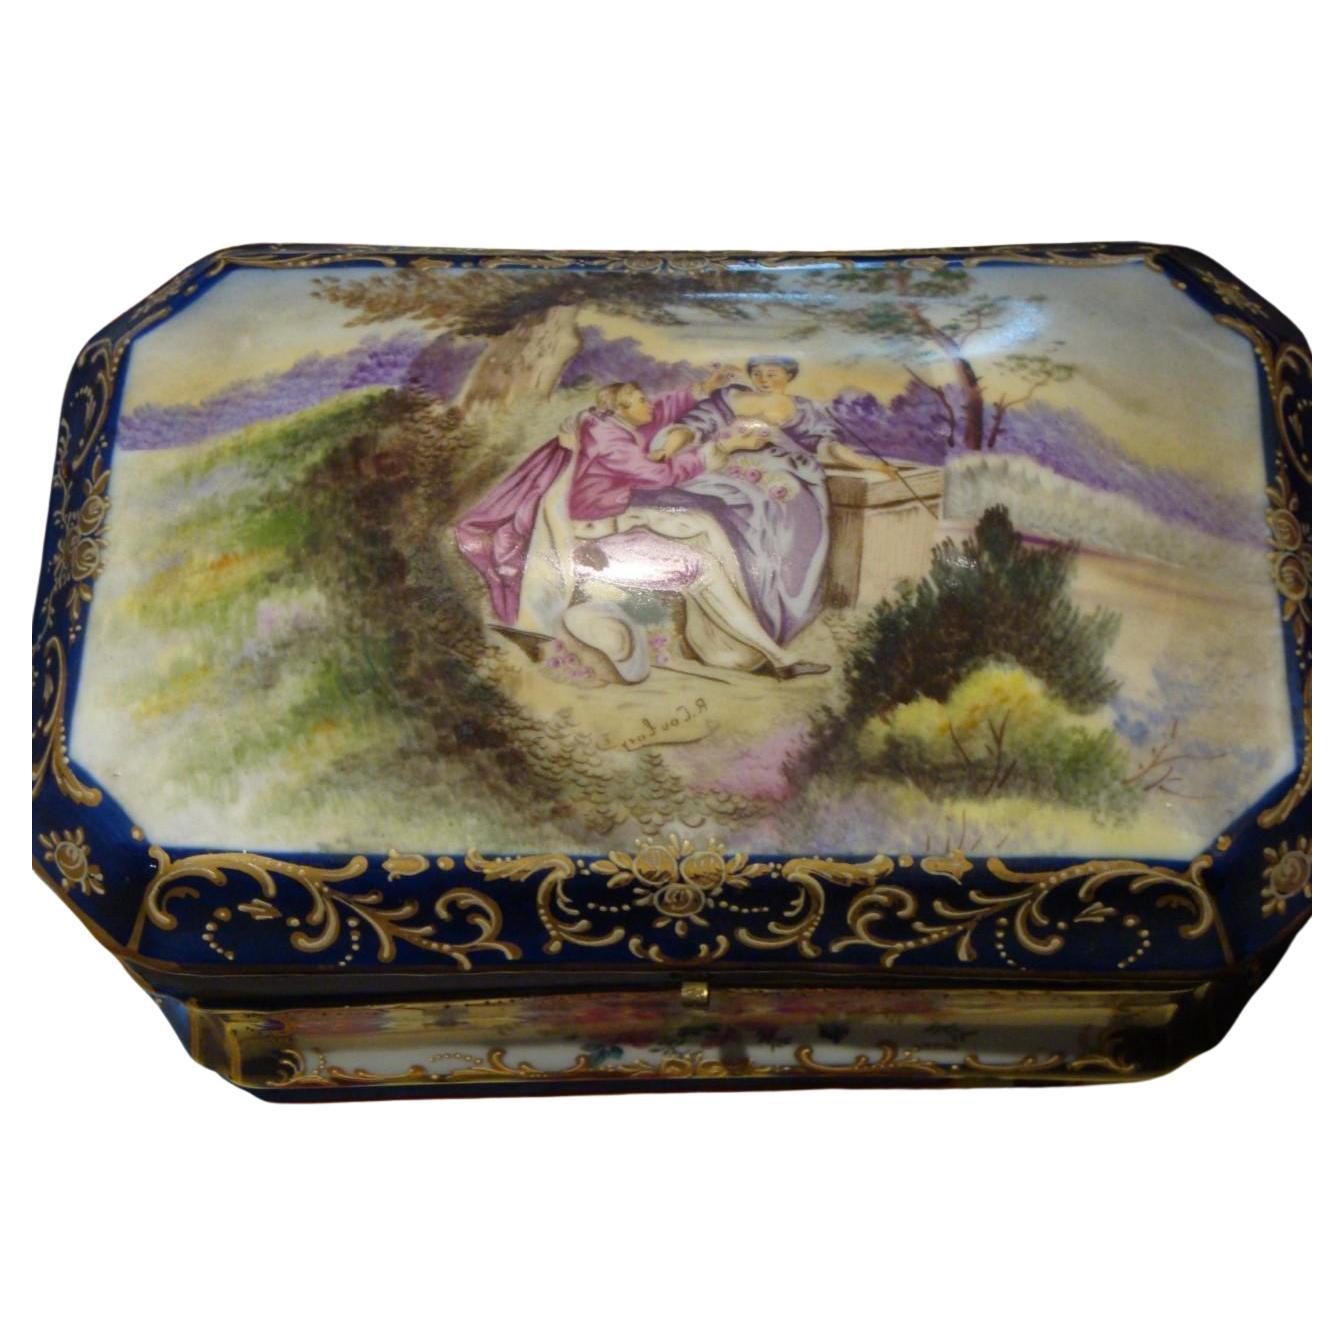 Rare Important Gorgeous Dresden Style Sevres Style Porcelain Jewelry Box Casket (Coffret à bijoux en porcelaine)